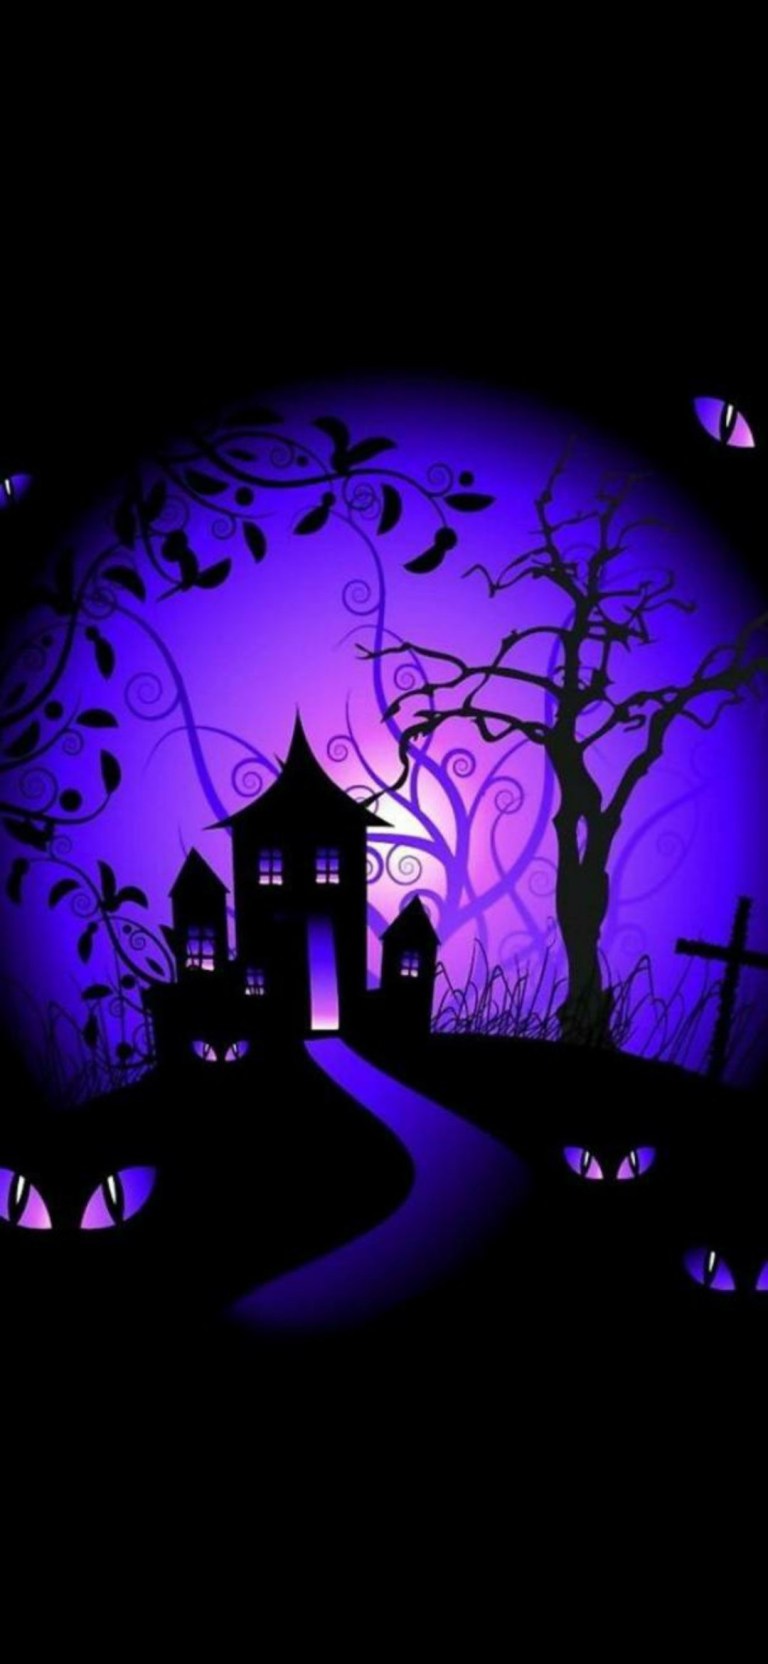 Halloween Art Dark Black Android 4K Wallpaper Download